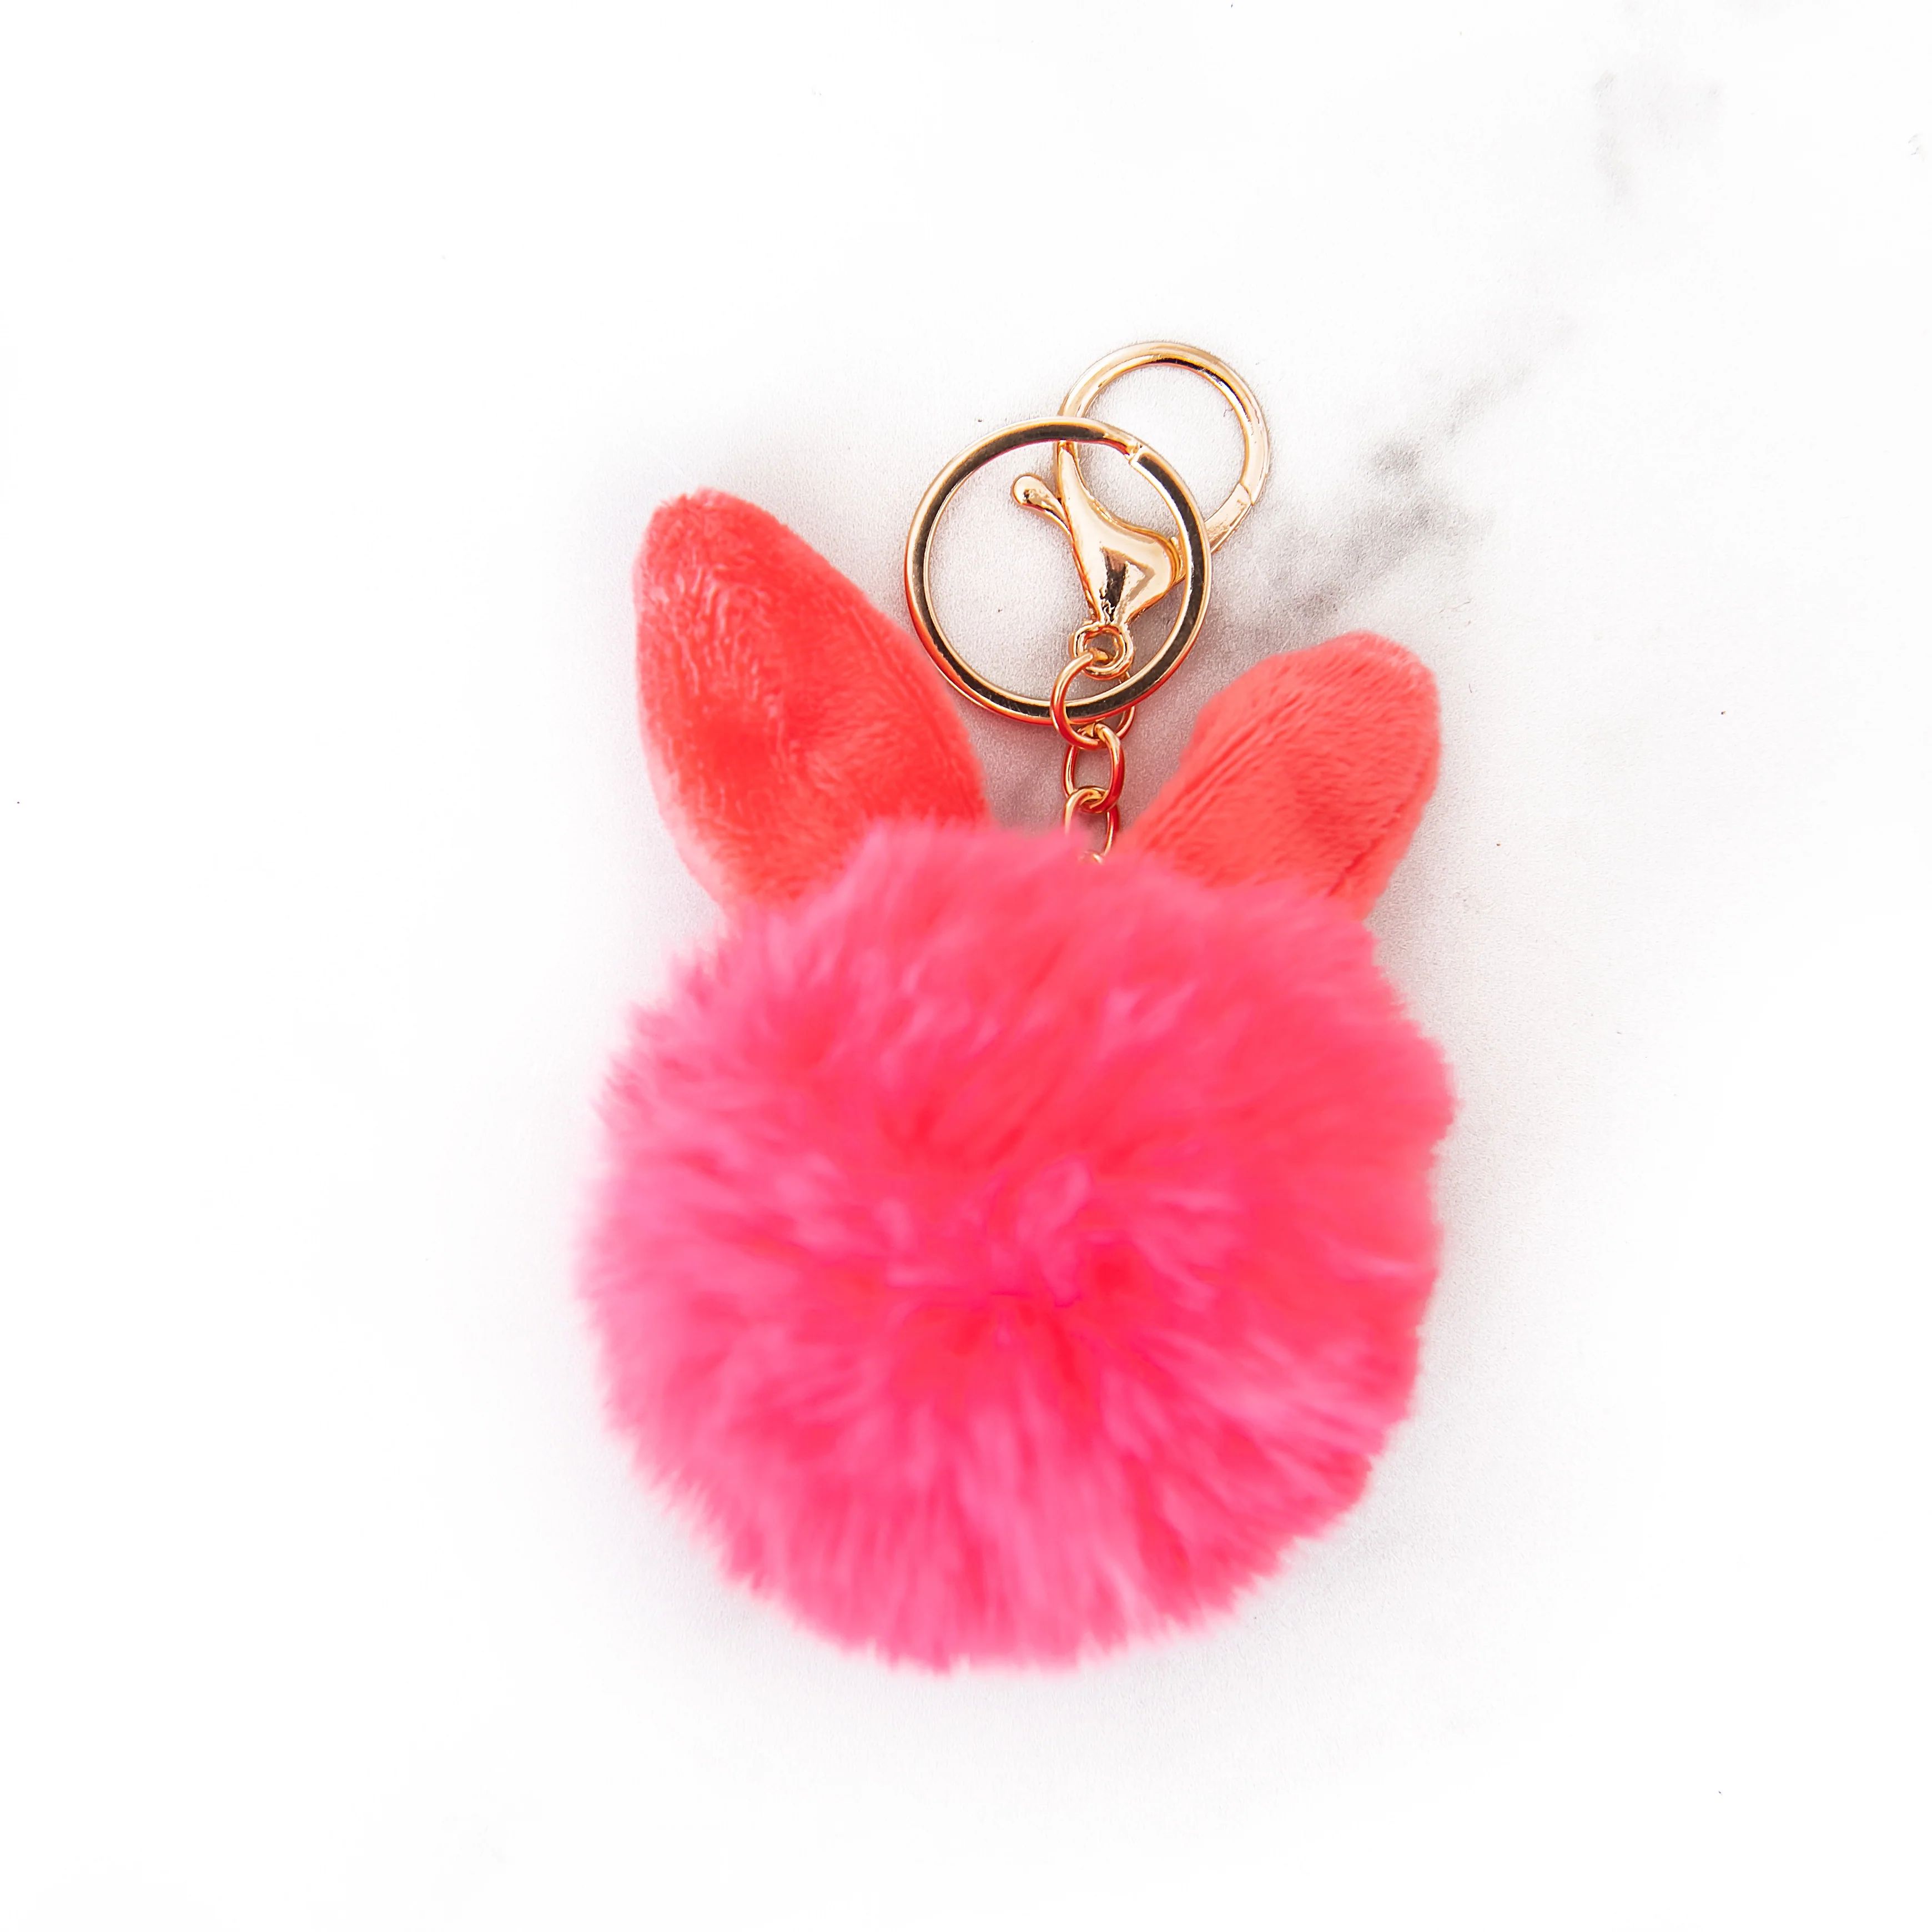 Bunny Pom Pom Key Chain | Pink | Golden Thread